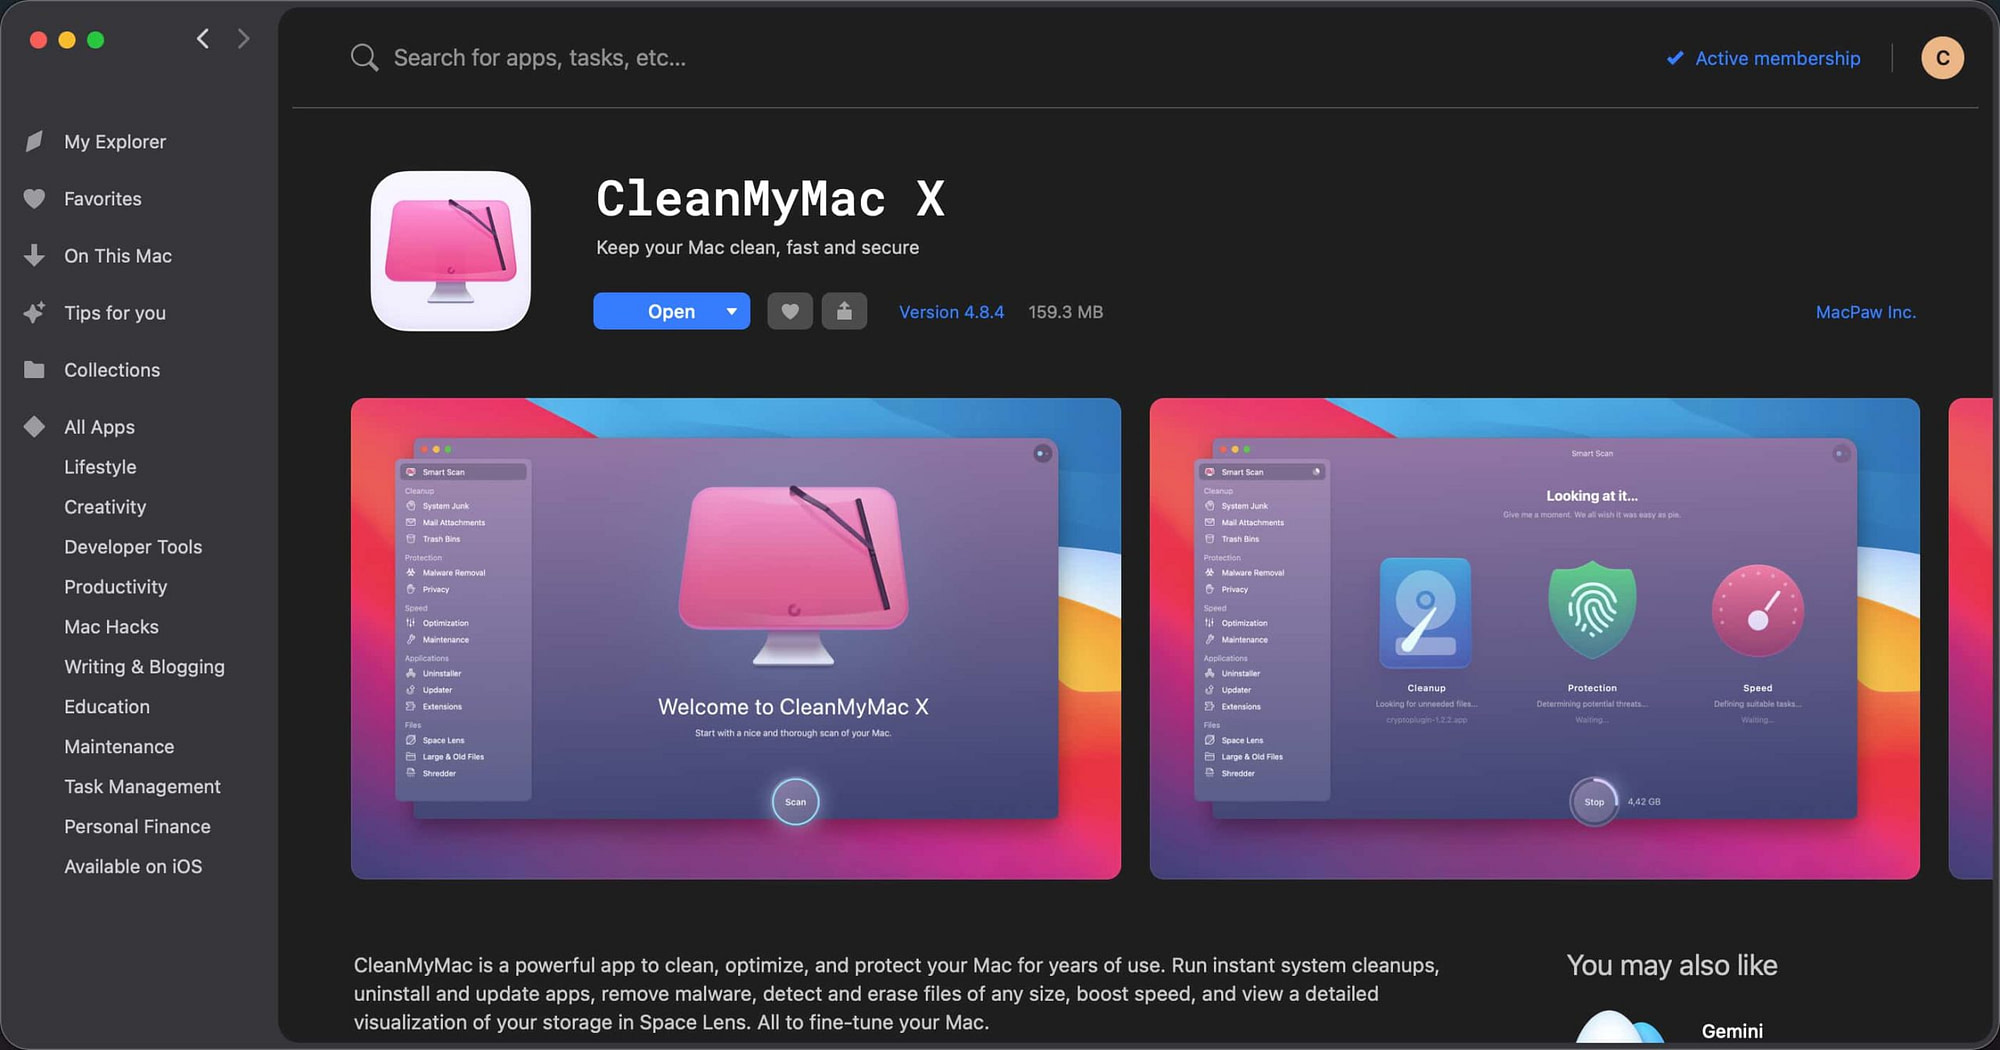 best mac cleaner or utility app reddit 2019